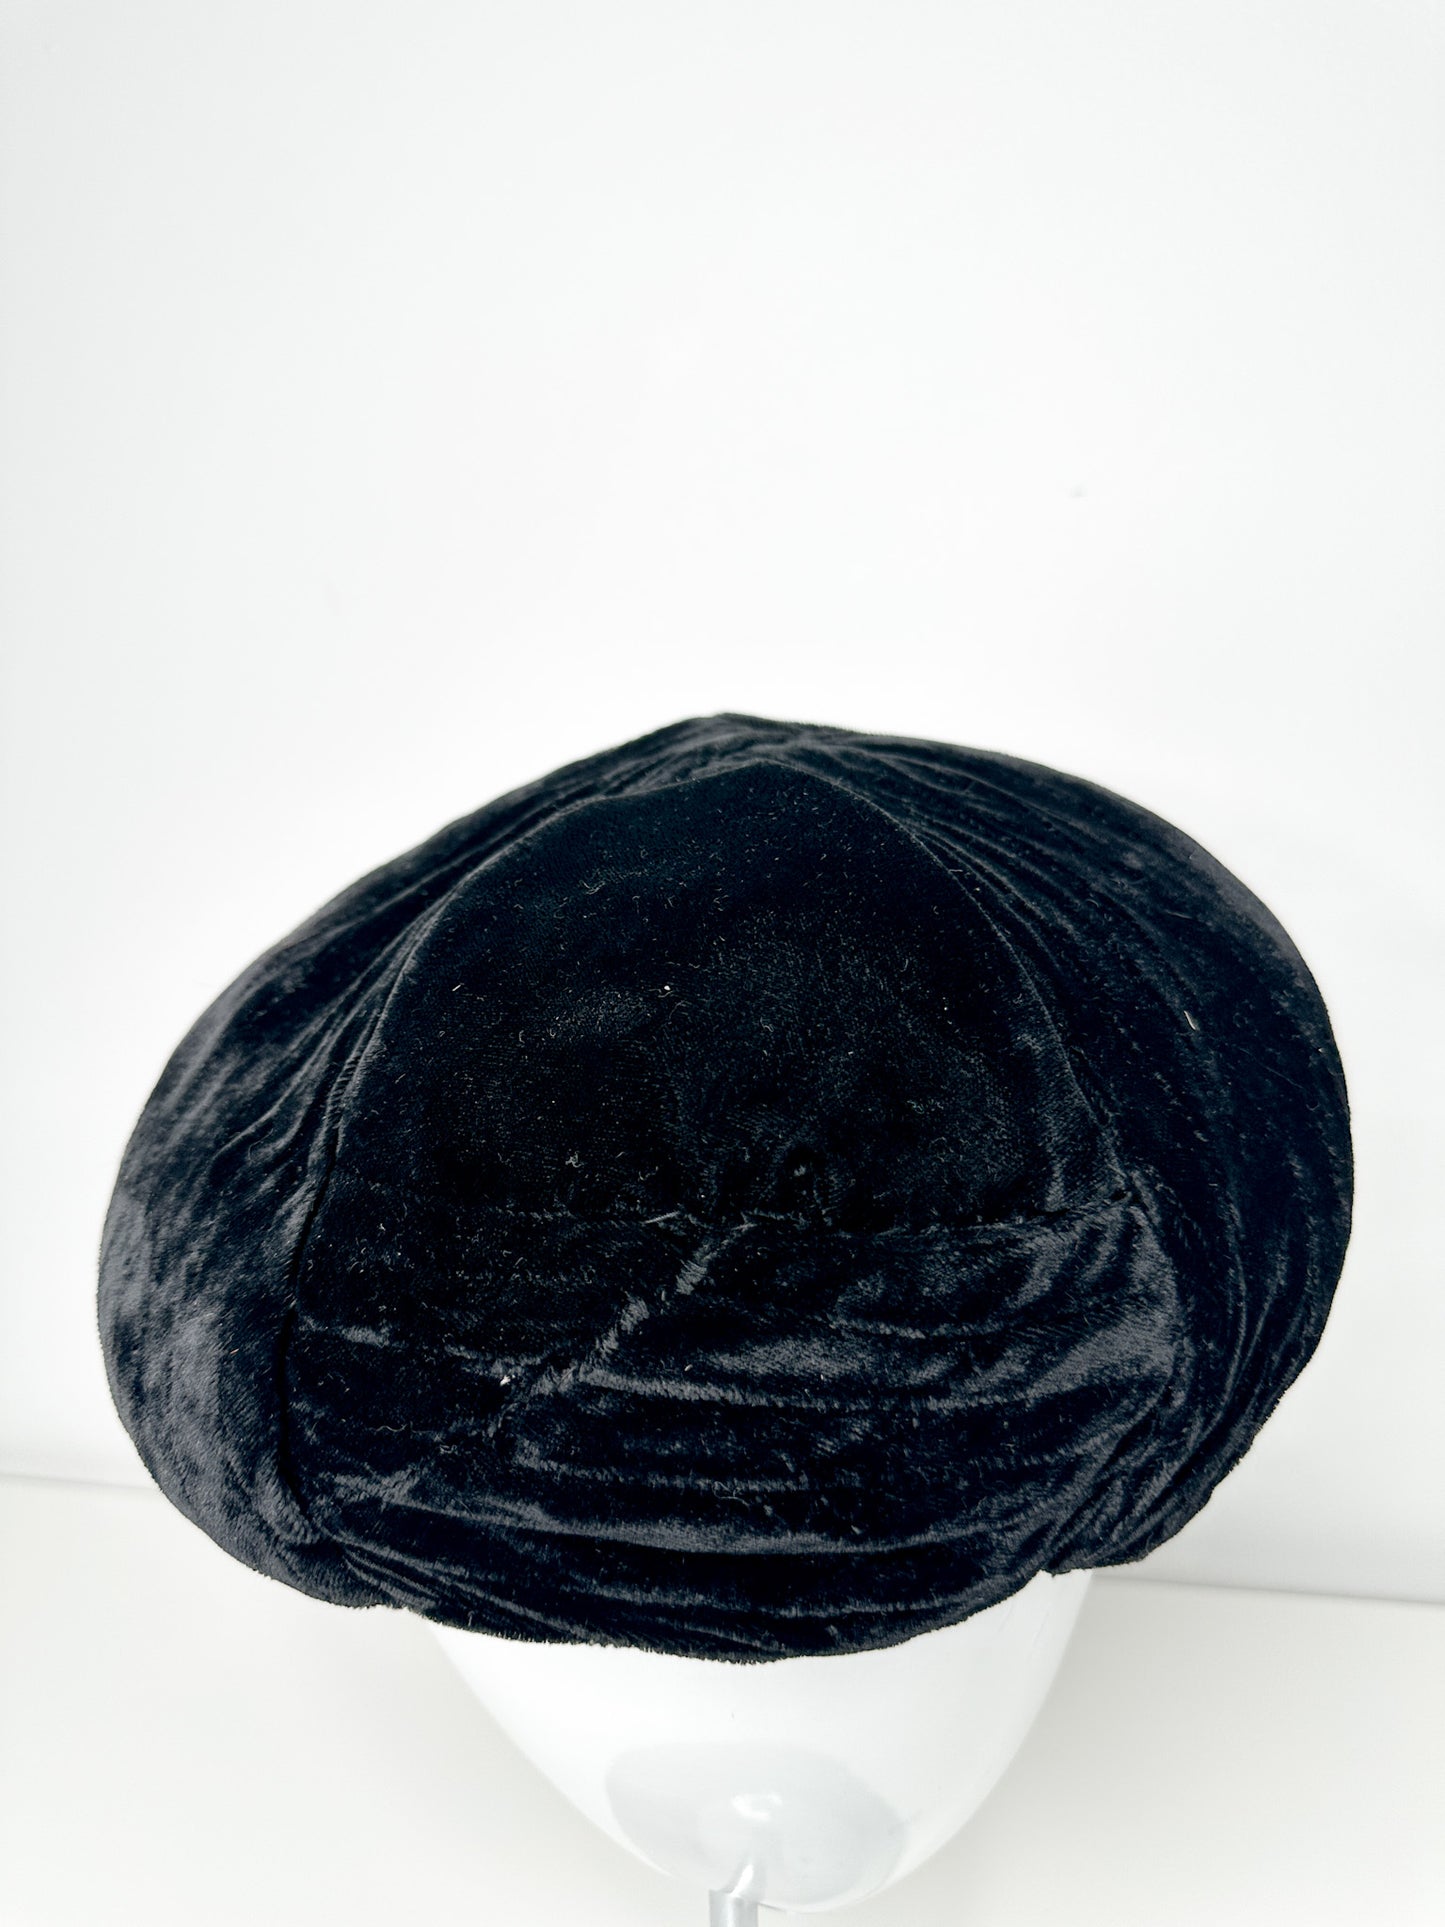 Vintage Black Velvet Hat with Top Knot| Vintage Black Velvet Hat |